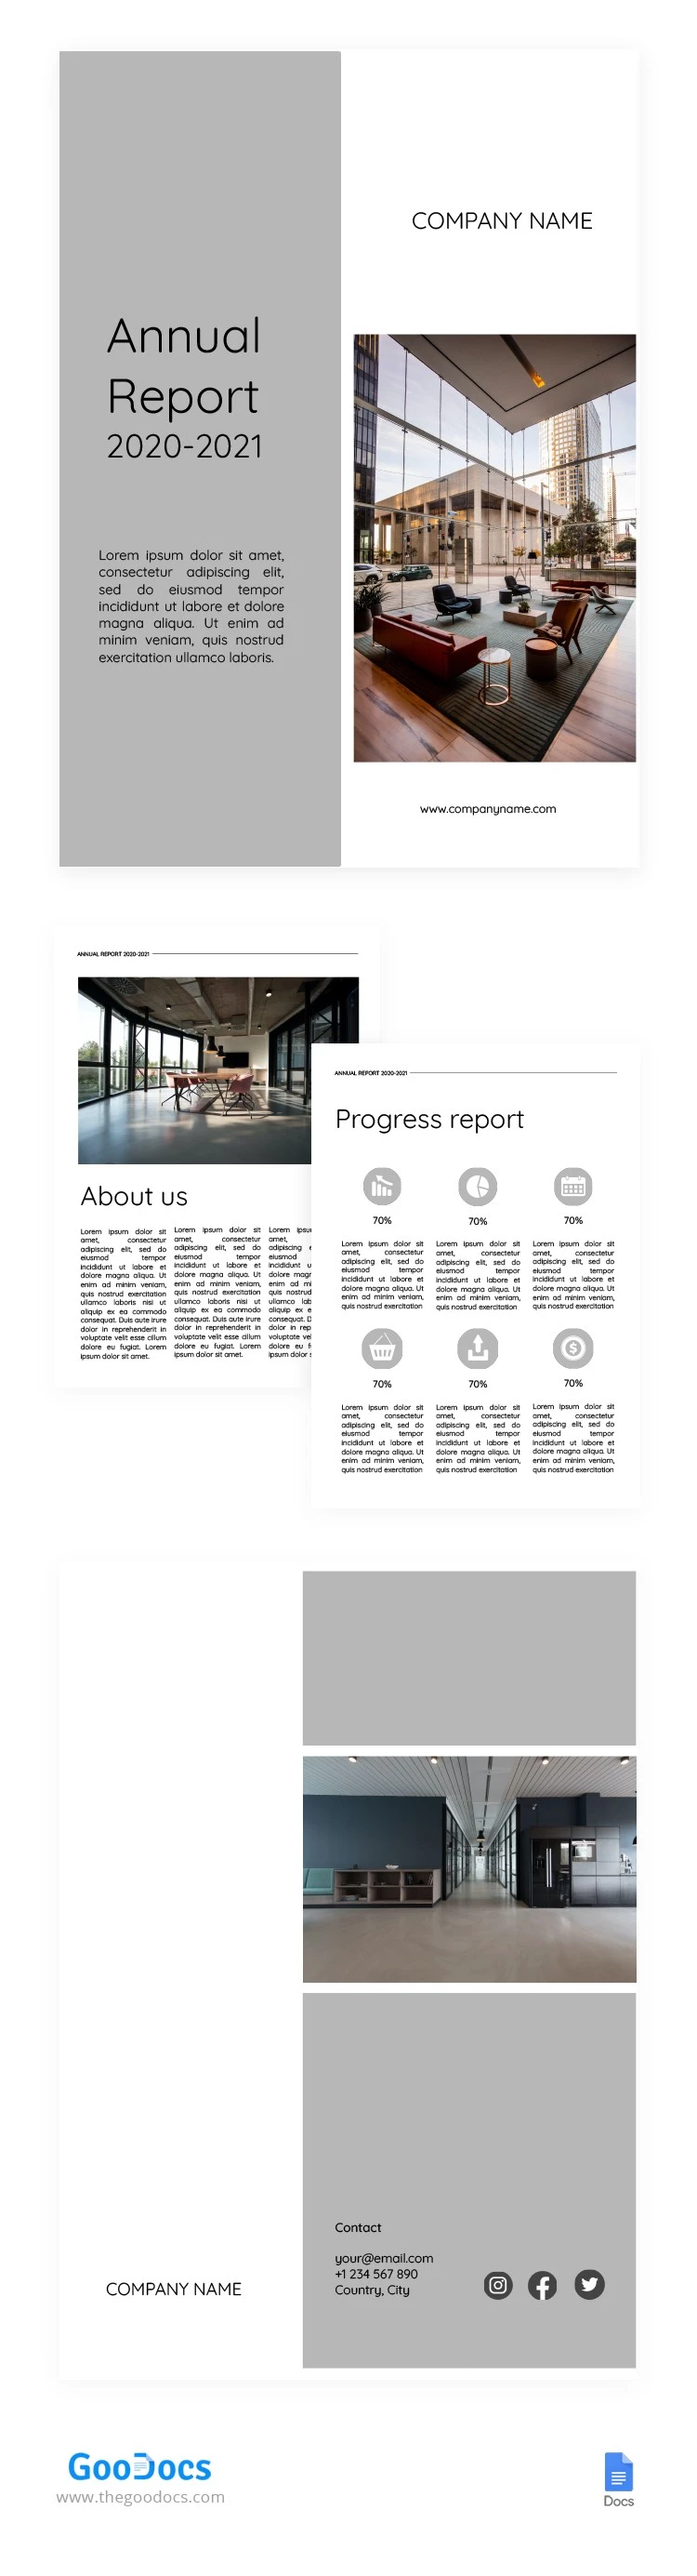 Rapport annuel Blanc et Gris - free Google Docs Template - 10062412